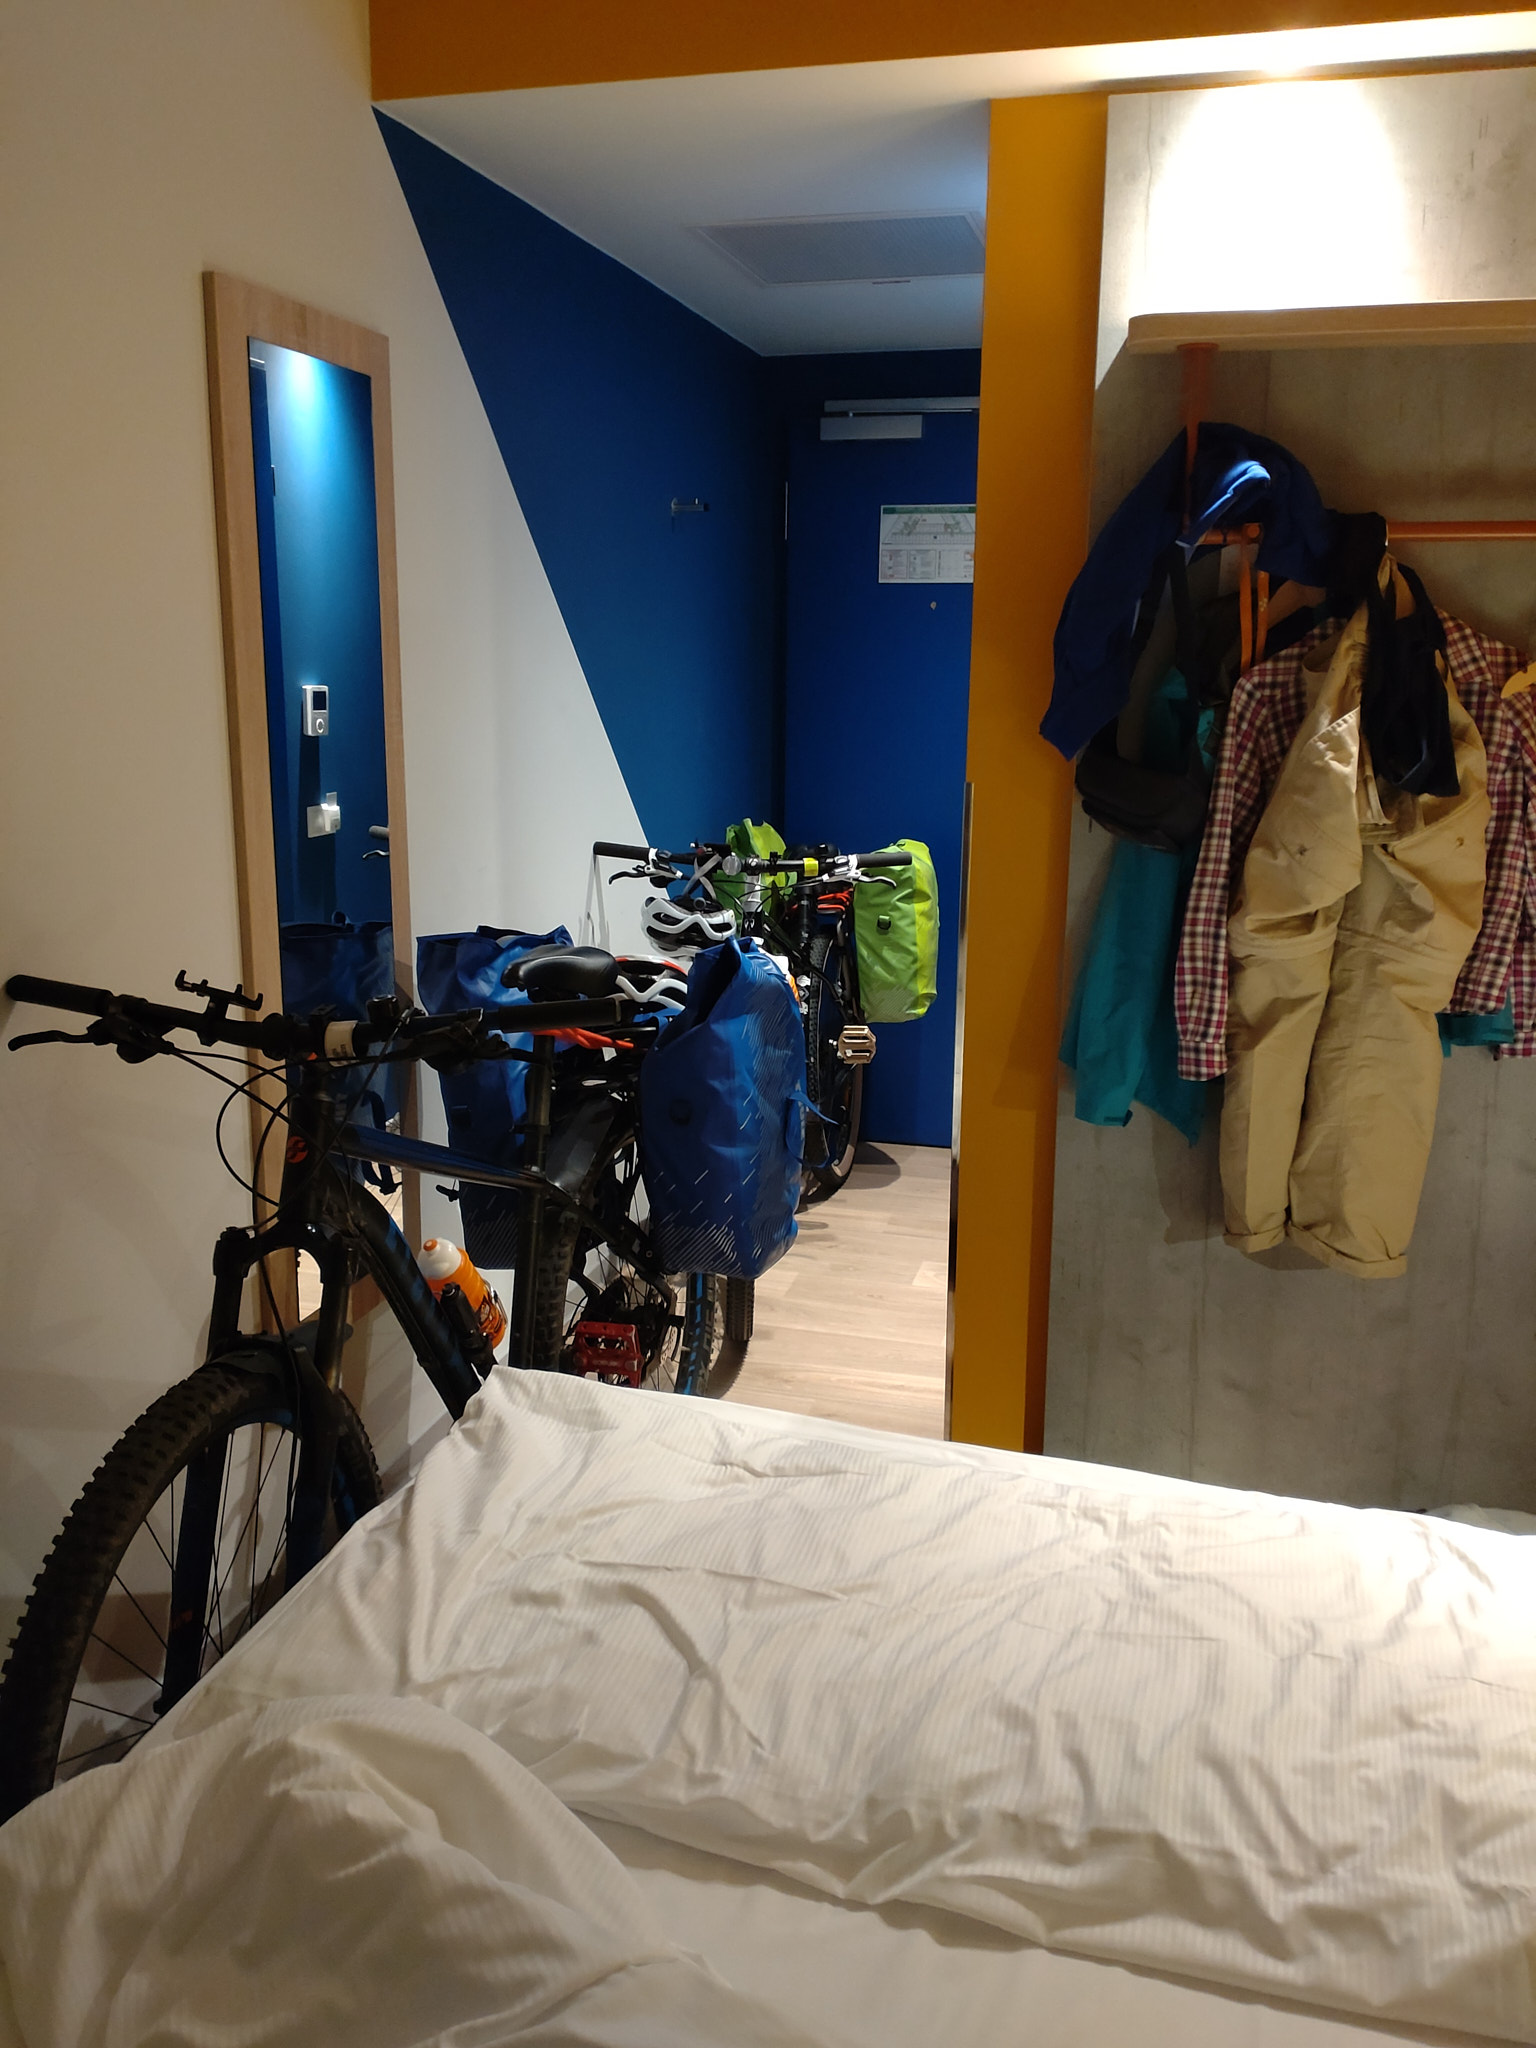 Cyklar på hotellrummet